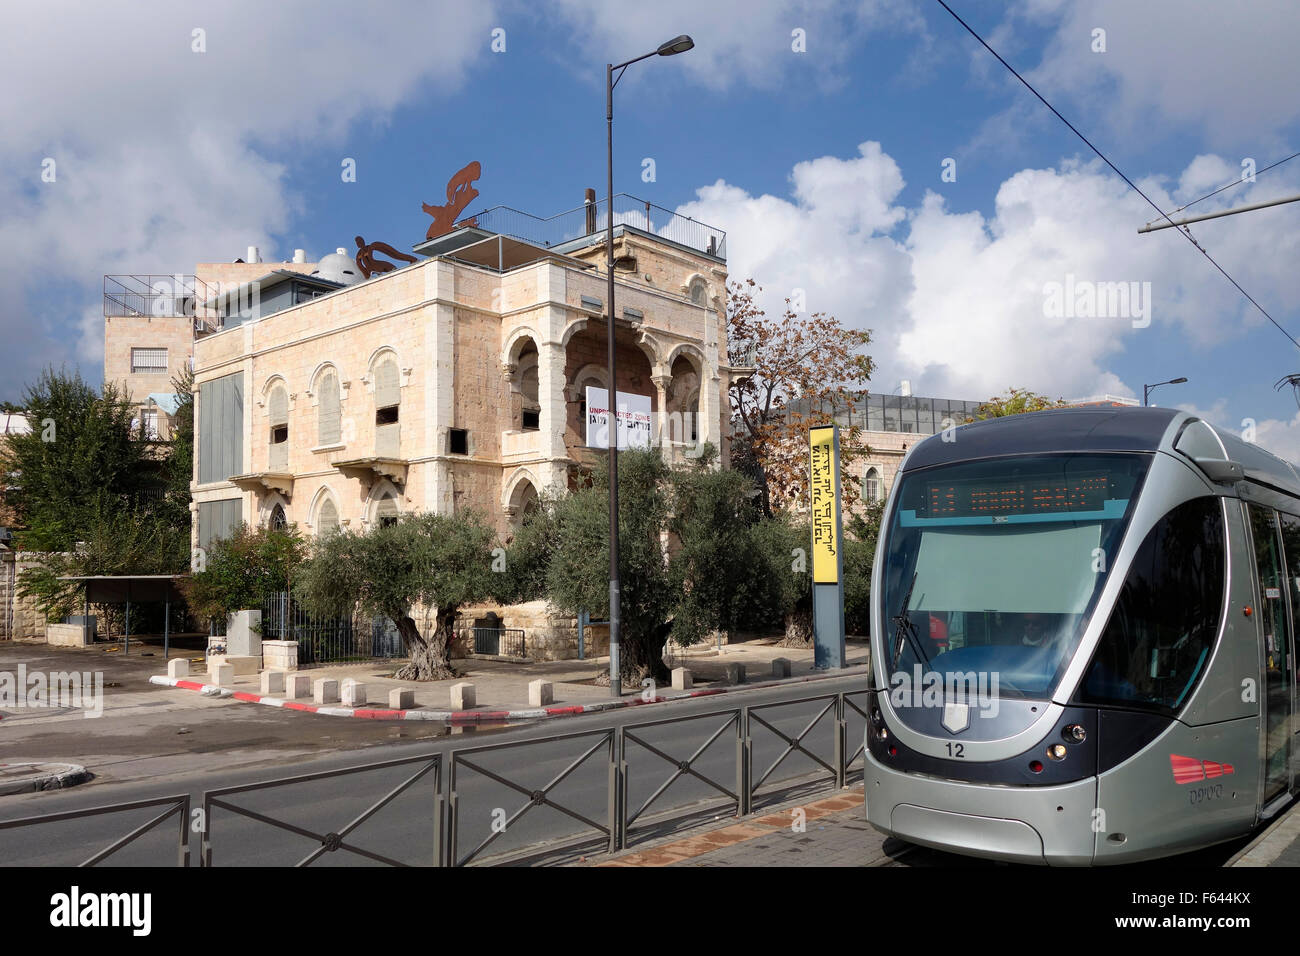 Die Jerusalem Jerusalem, Stadtbahn oder Straßenbahn Vergangenheit durch das Museum auf der Naht im Hause der Familie des ursprünglichen Architekten untergebracht, Andoni Baramki, einen palästinensischen arabischen, deren Eigentum durch Israel nach 1948 angeeignet wurde Stockfoto